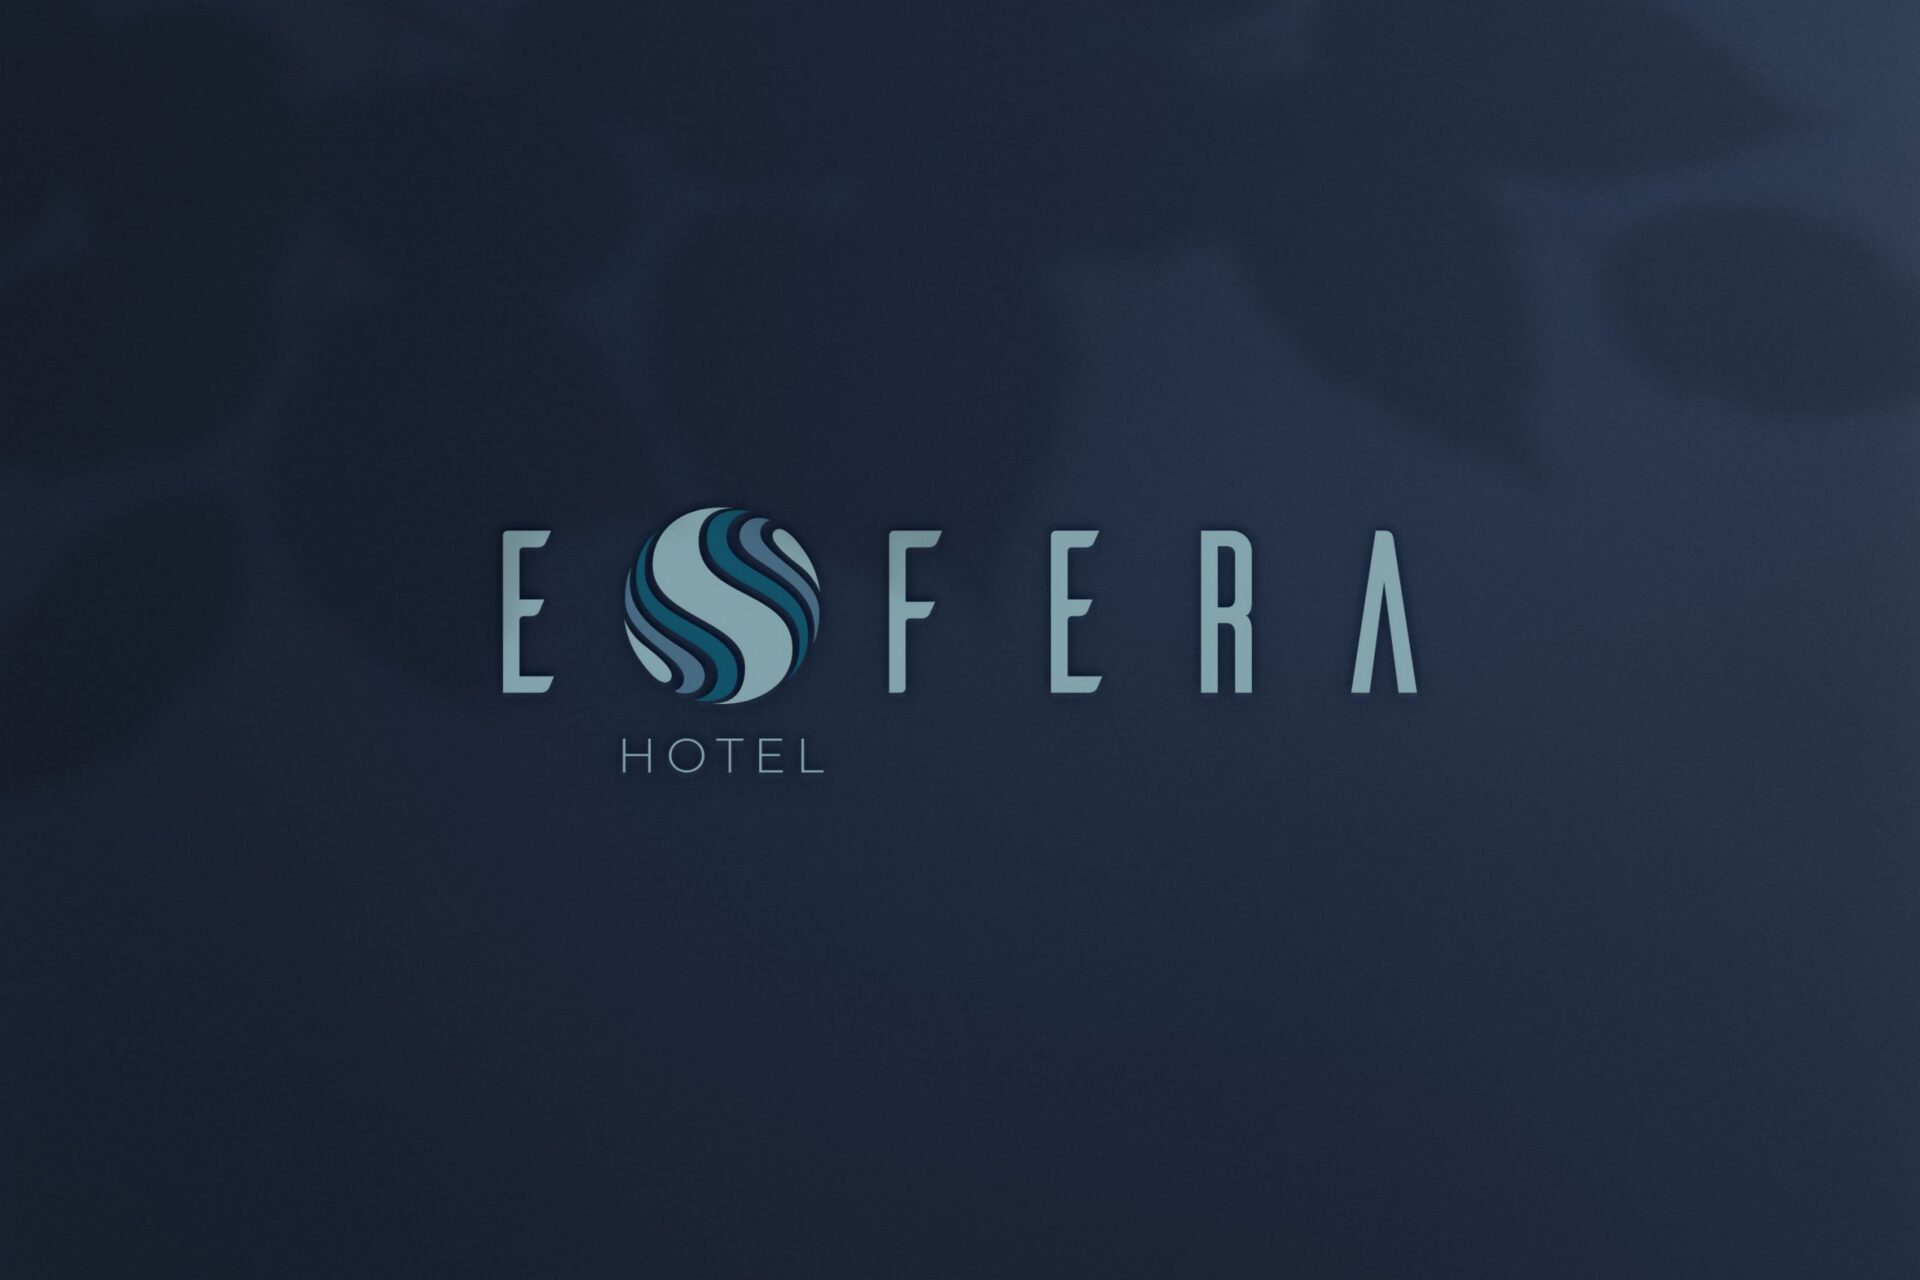 Hotel-Esfera-Branding-03